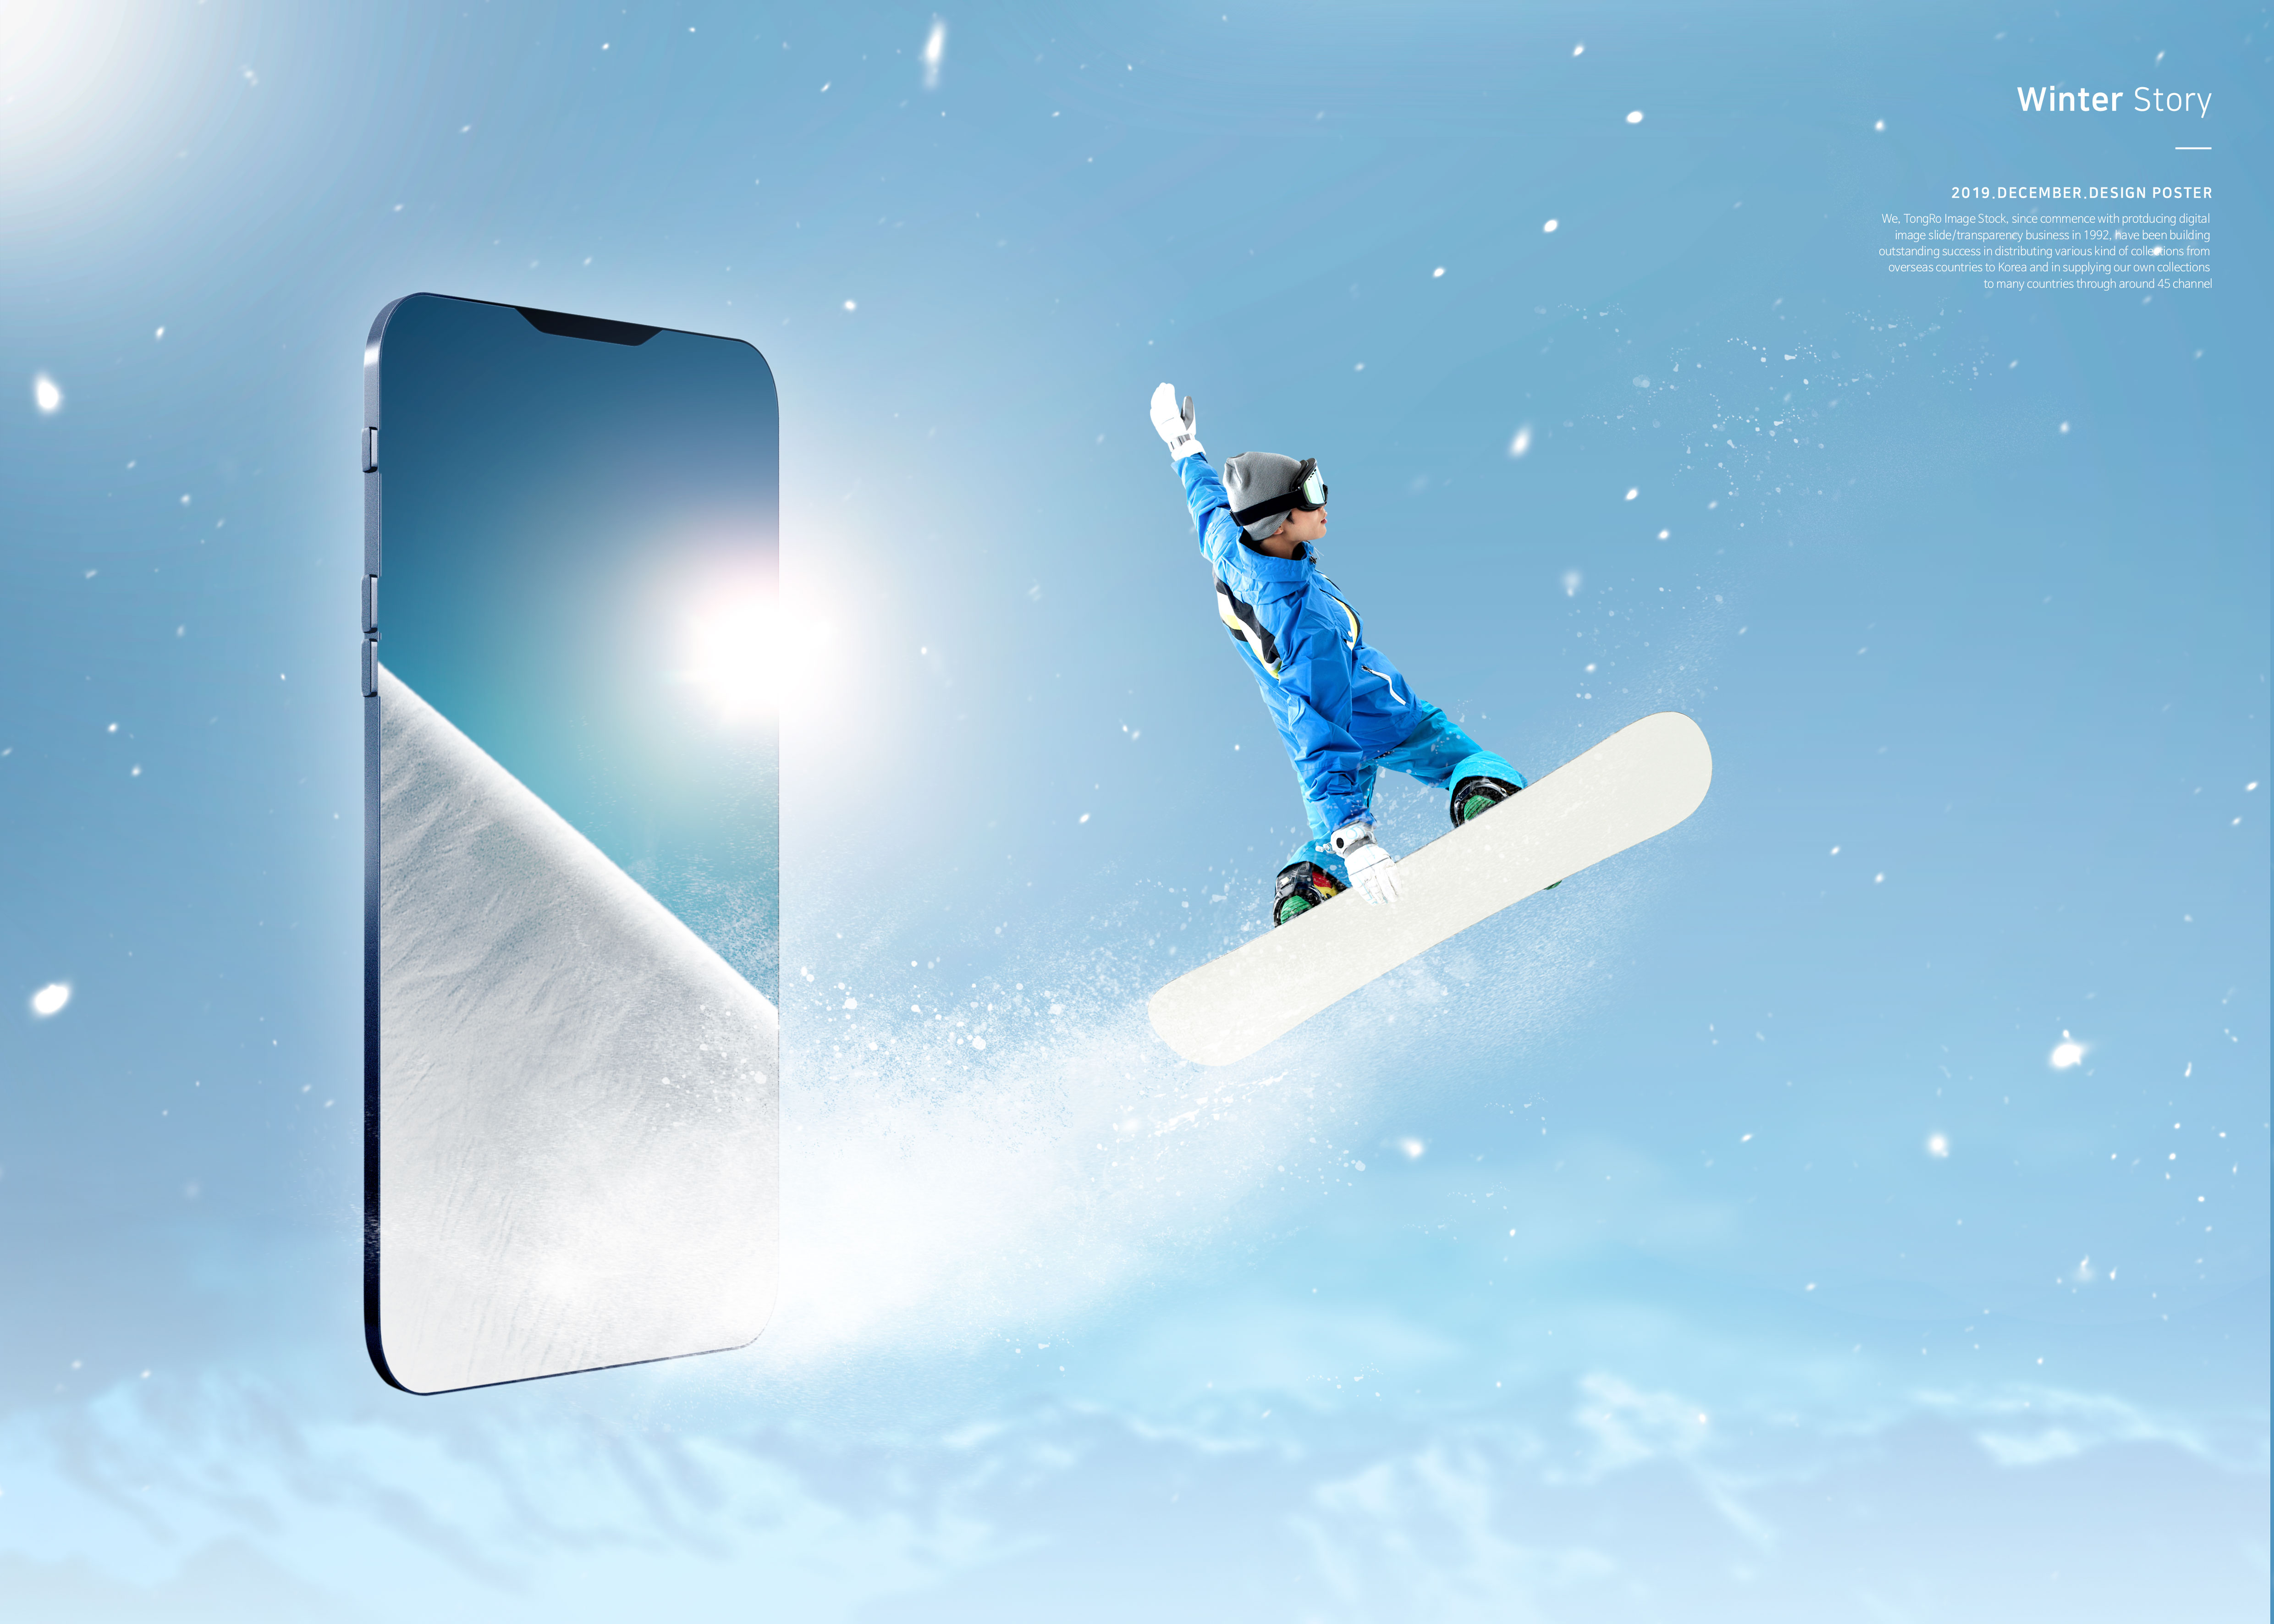 冬季故事雪山滑雪运动推广海报PSD素材蚂蚁素材精选模板插图